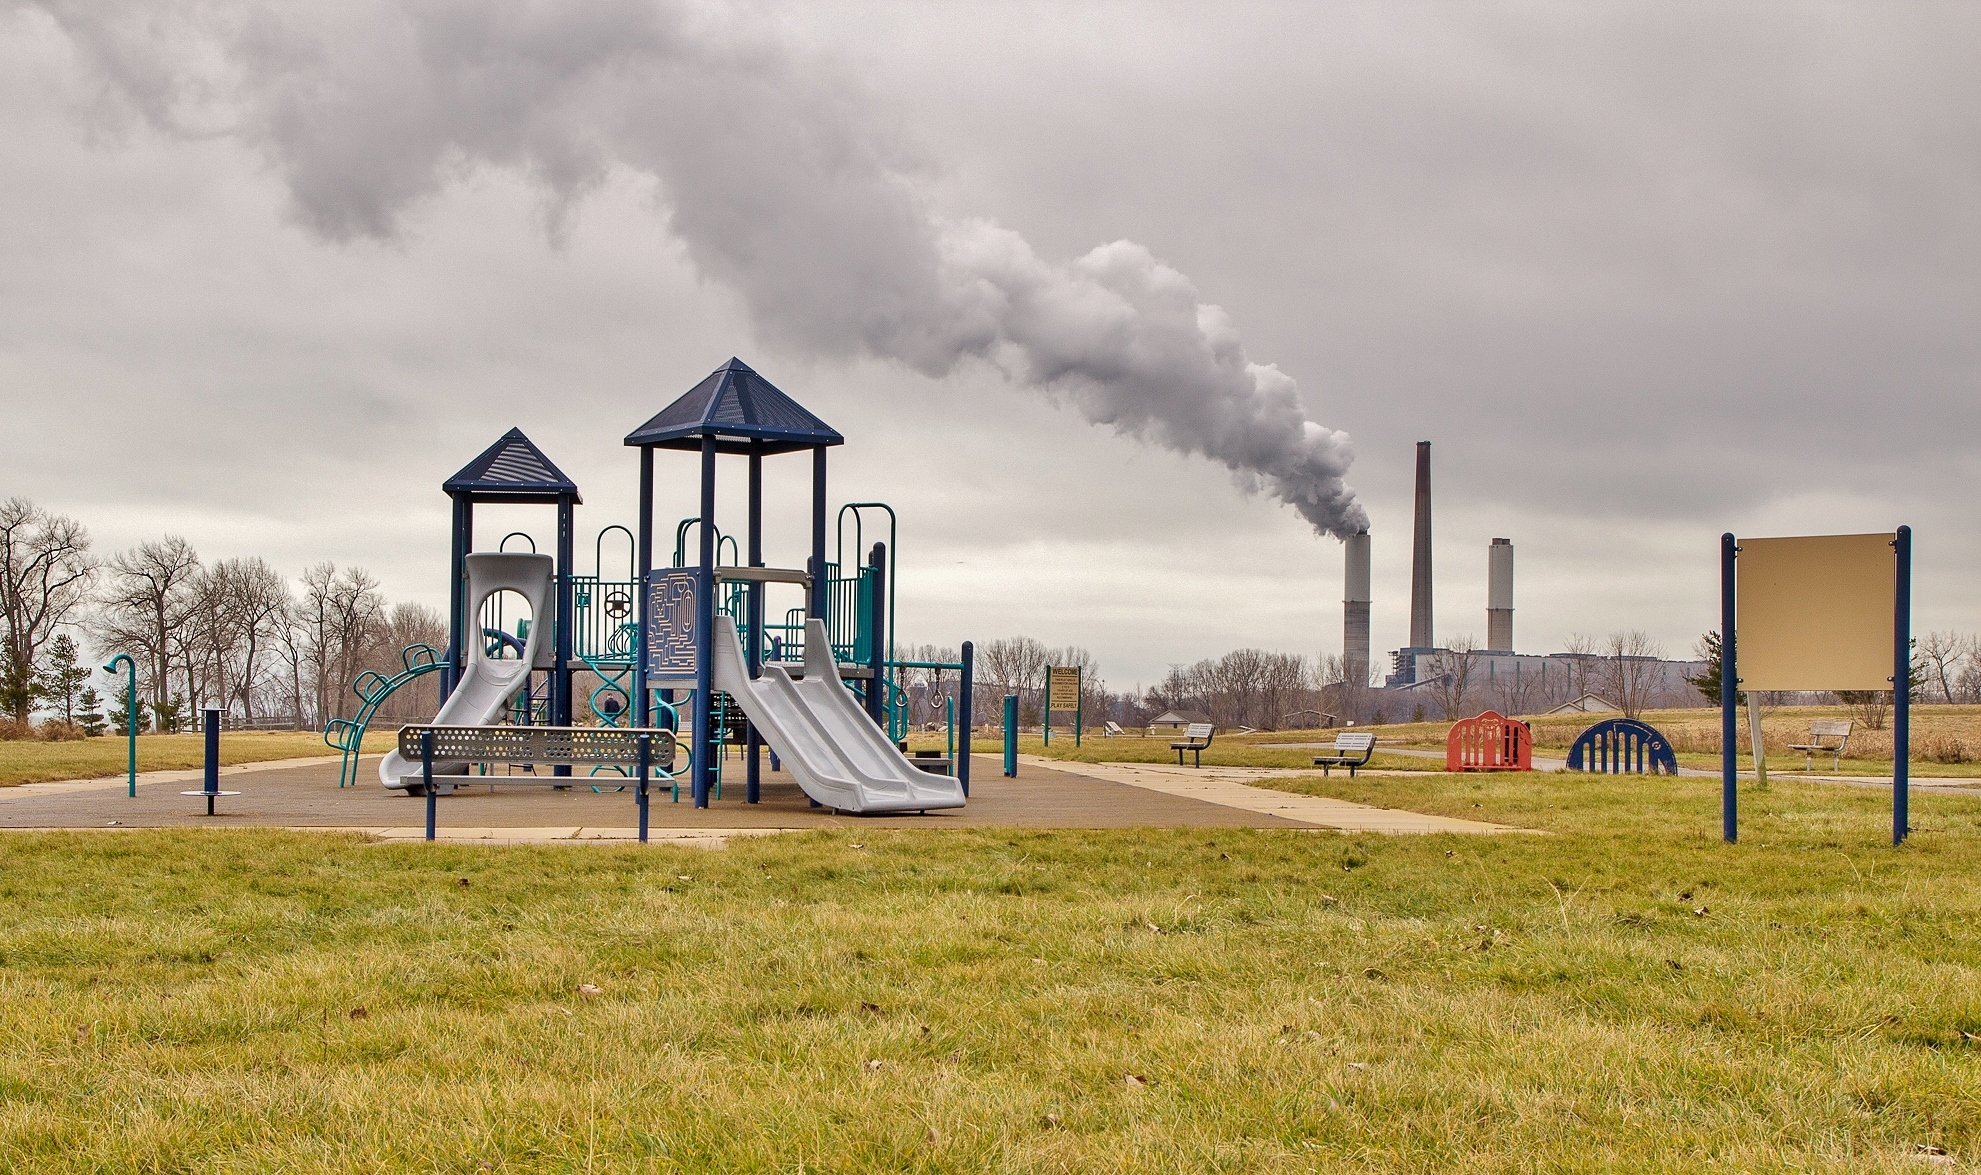 Parque infantil con chimeneas de fábrica liberando contaminación en el fondo